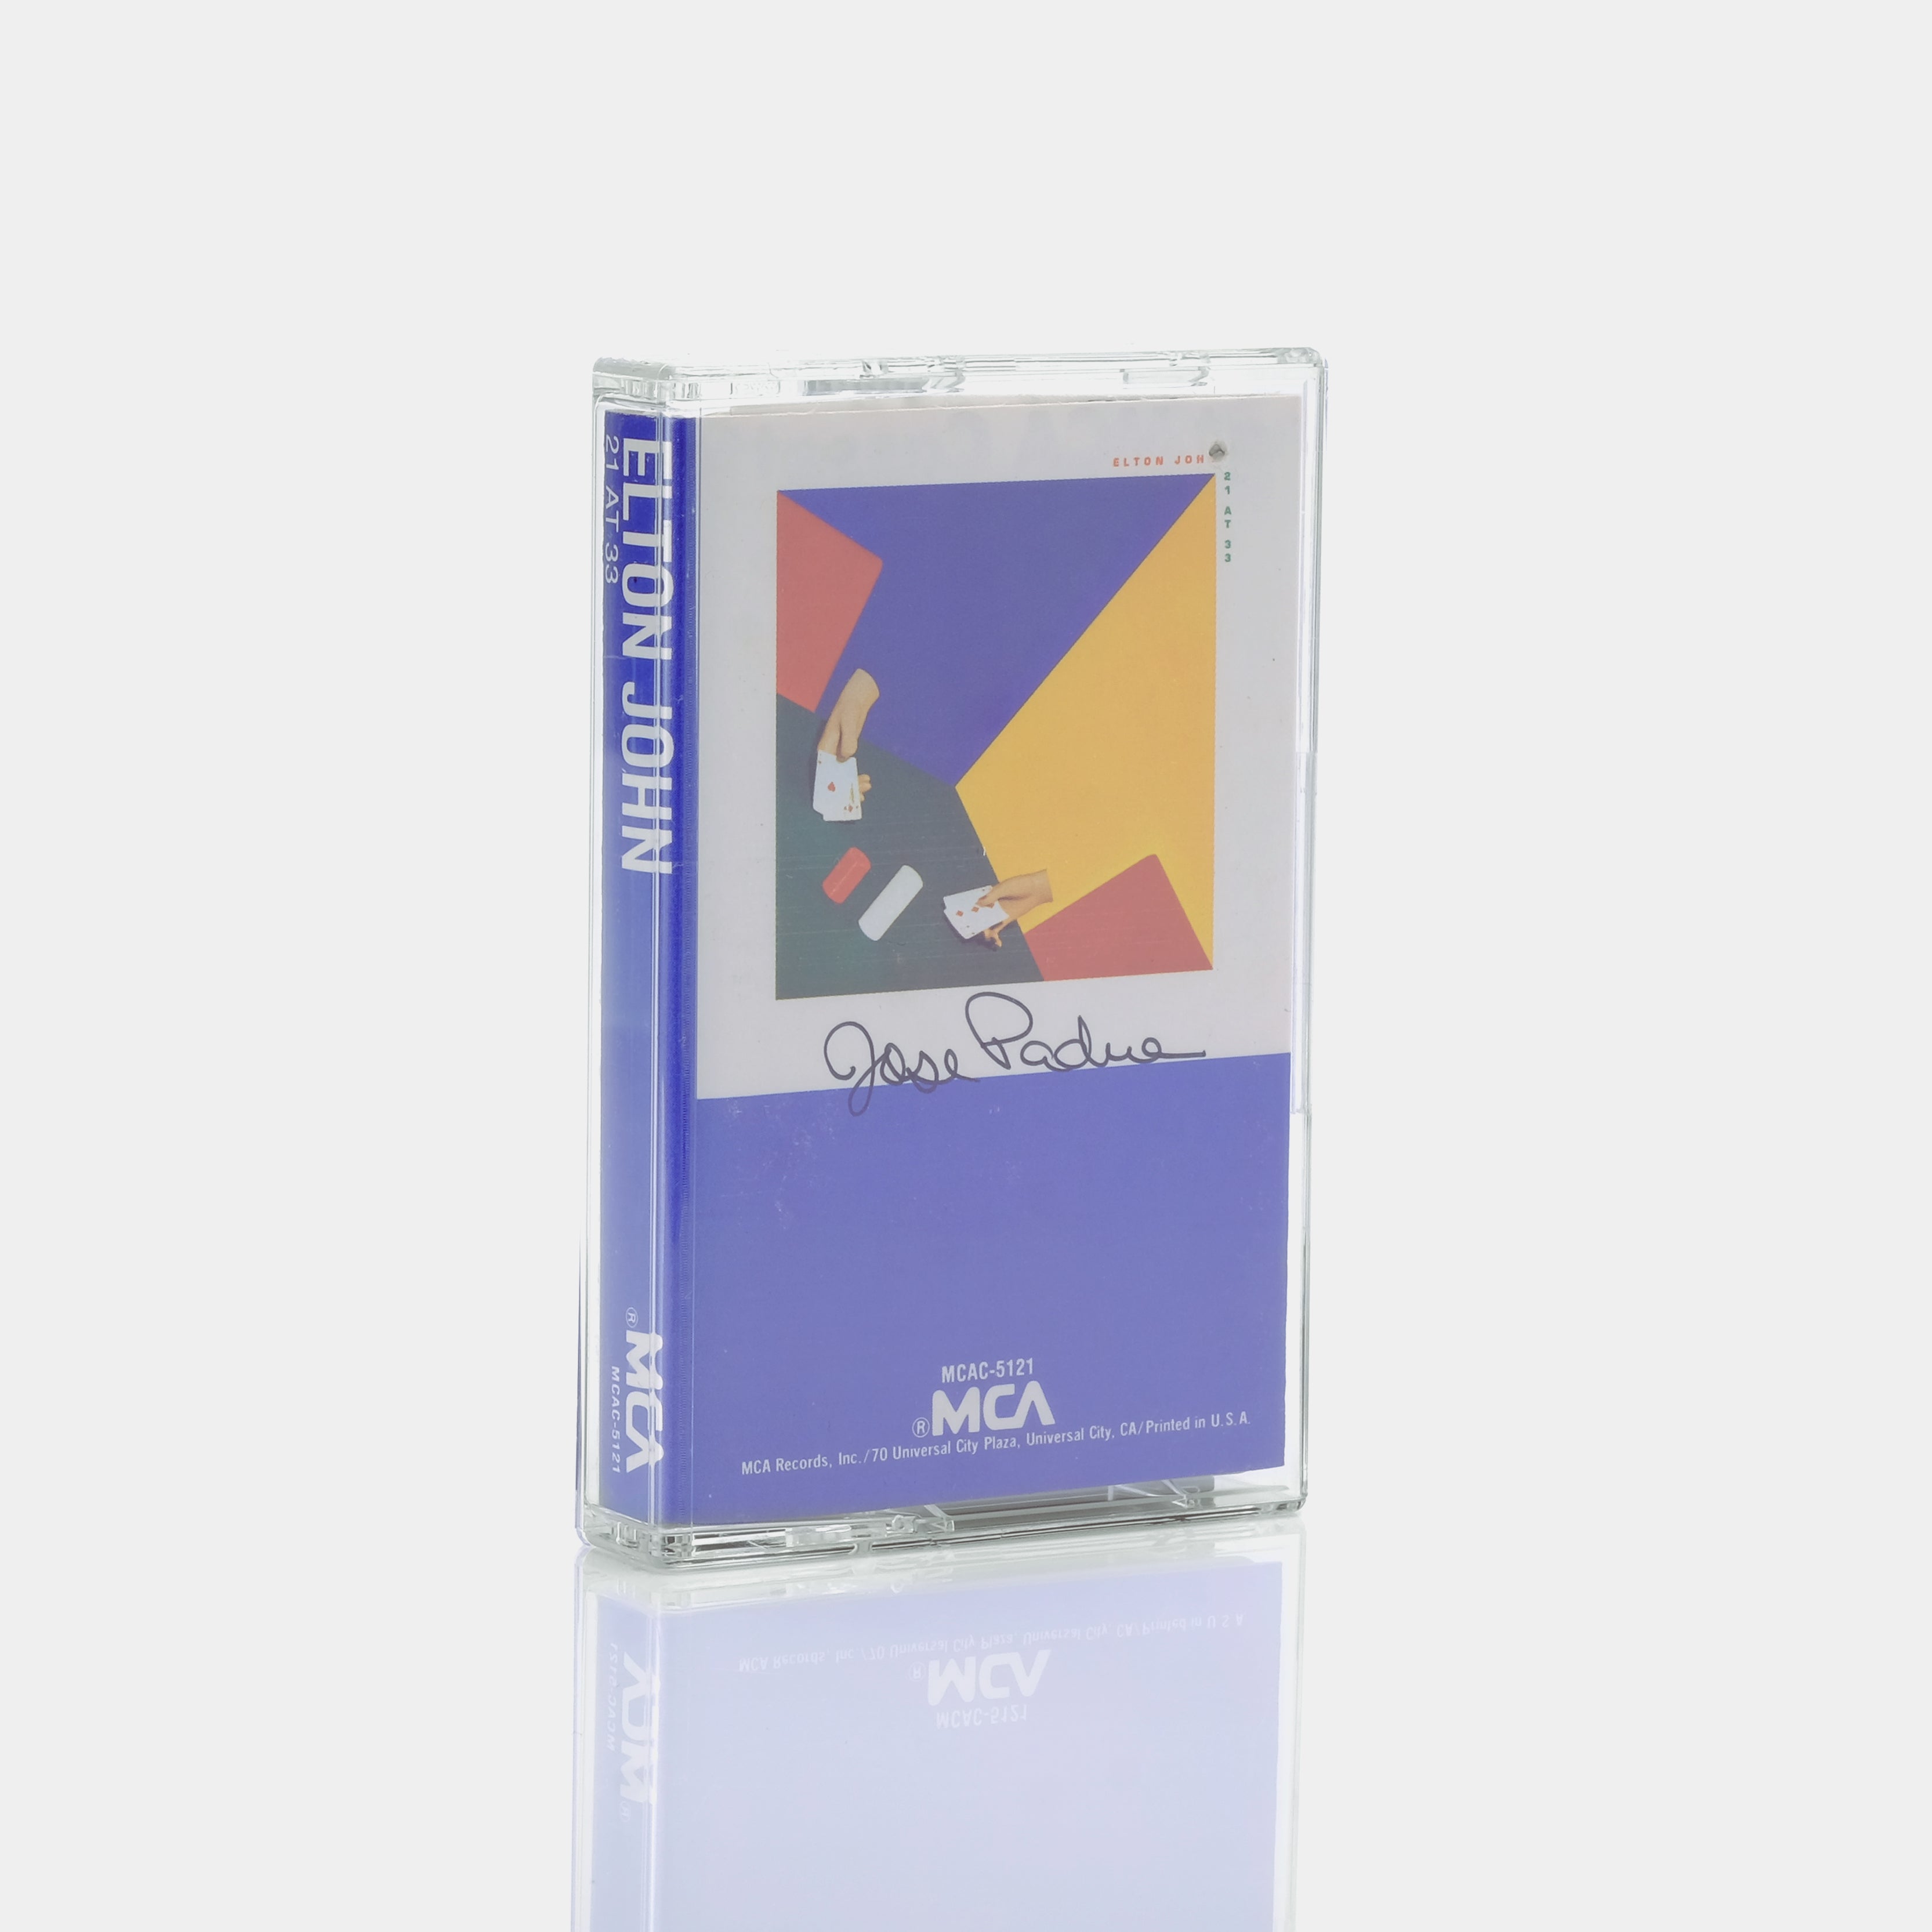 Elton John - 21 At 33 Cassette Tape